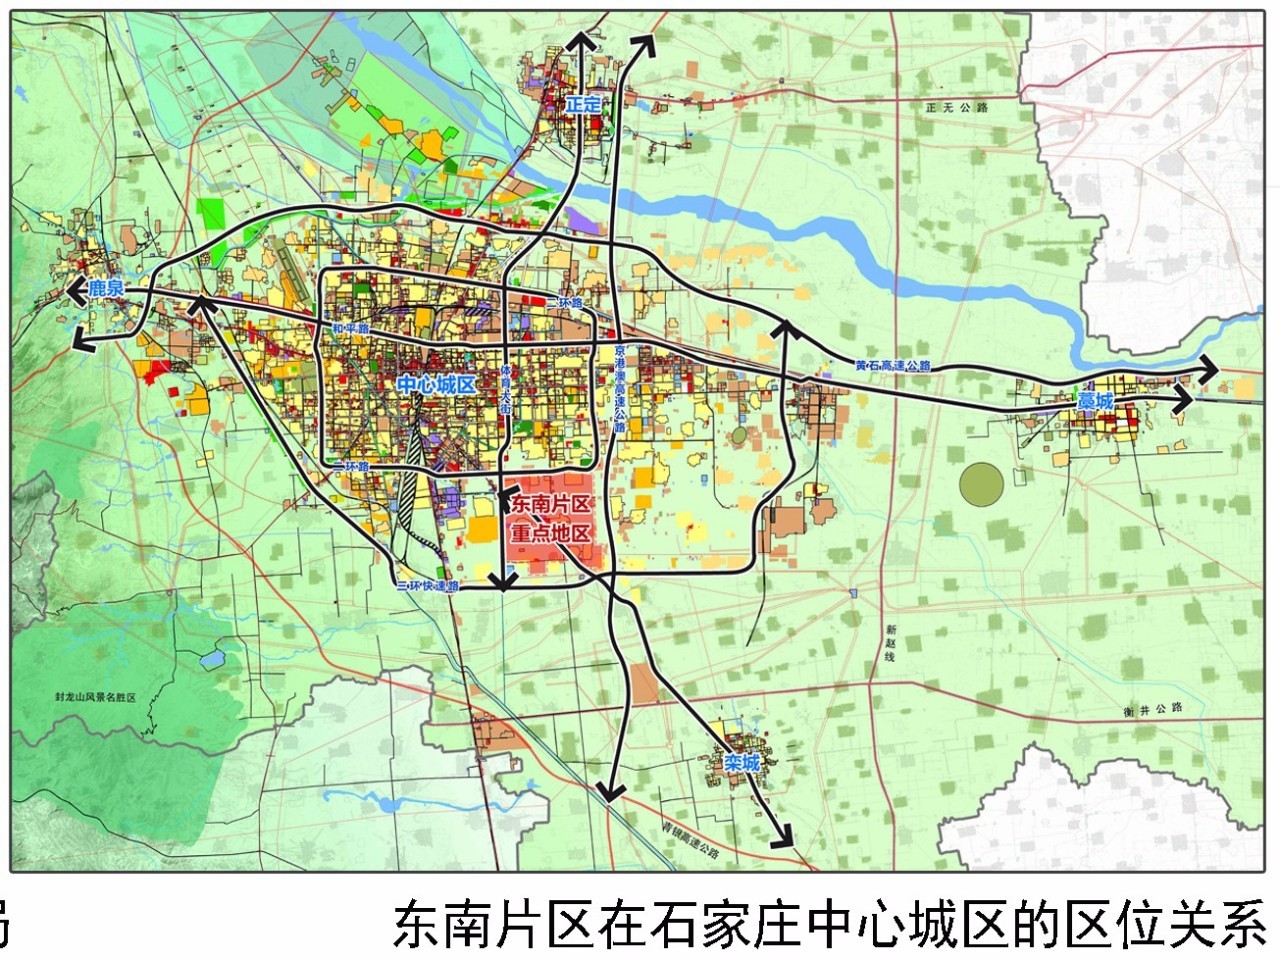 石家庄东南"富人"片区又曝利好规划,涉及10个城中村